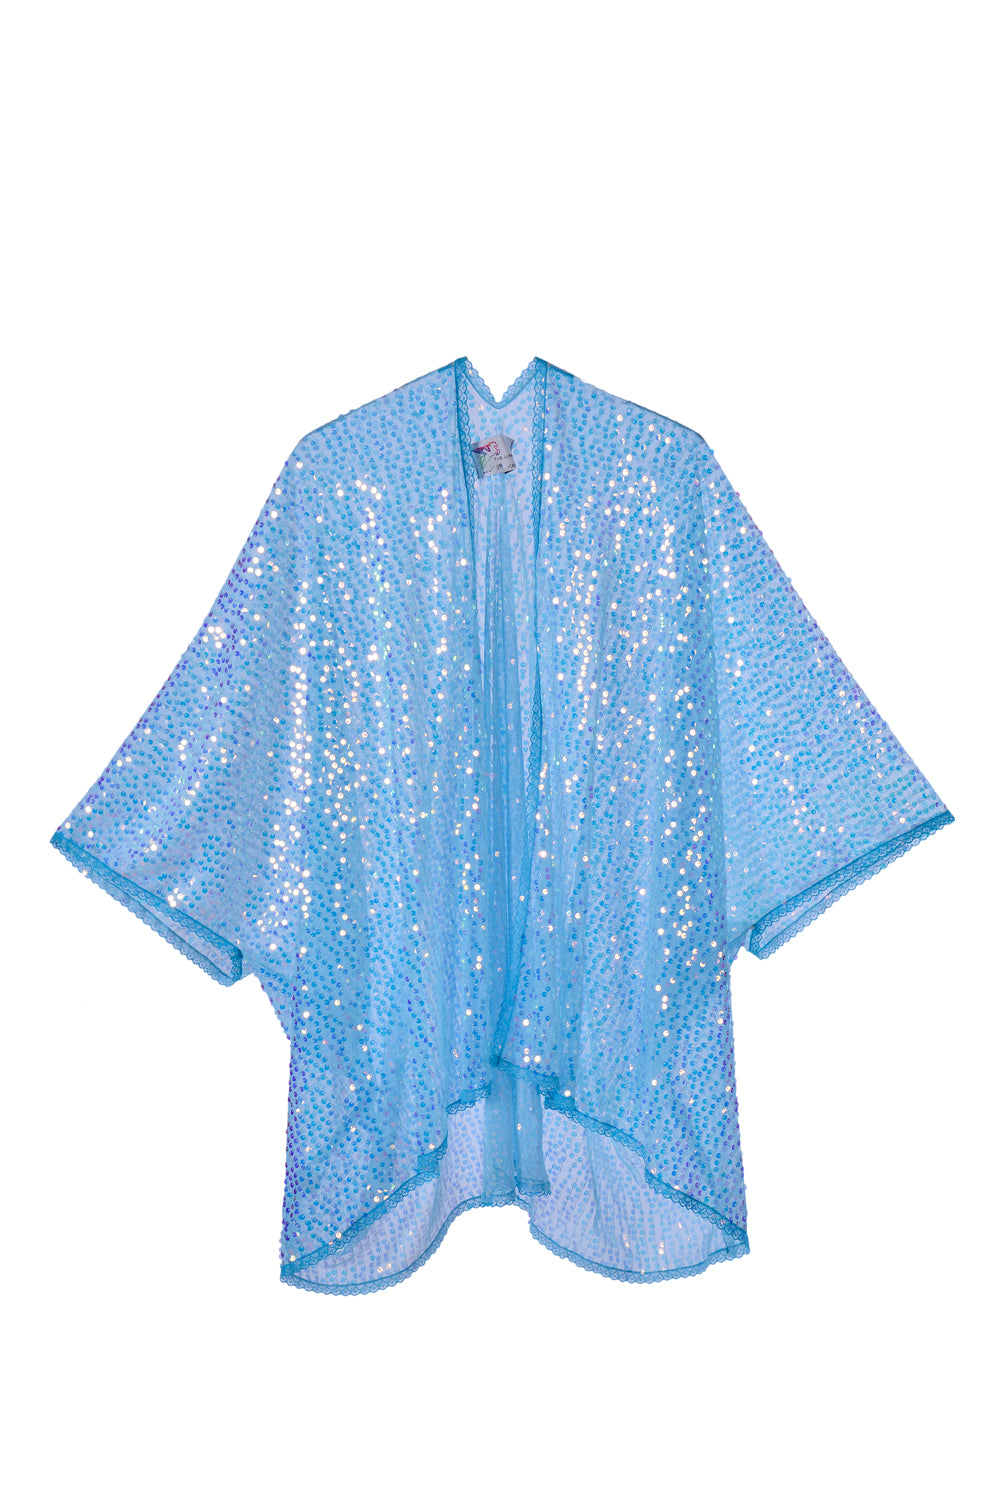 Sequin Kimono - Aqua